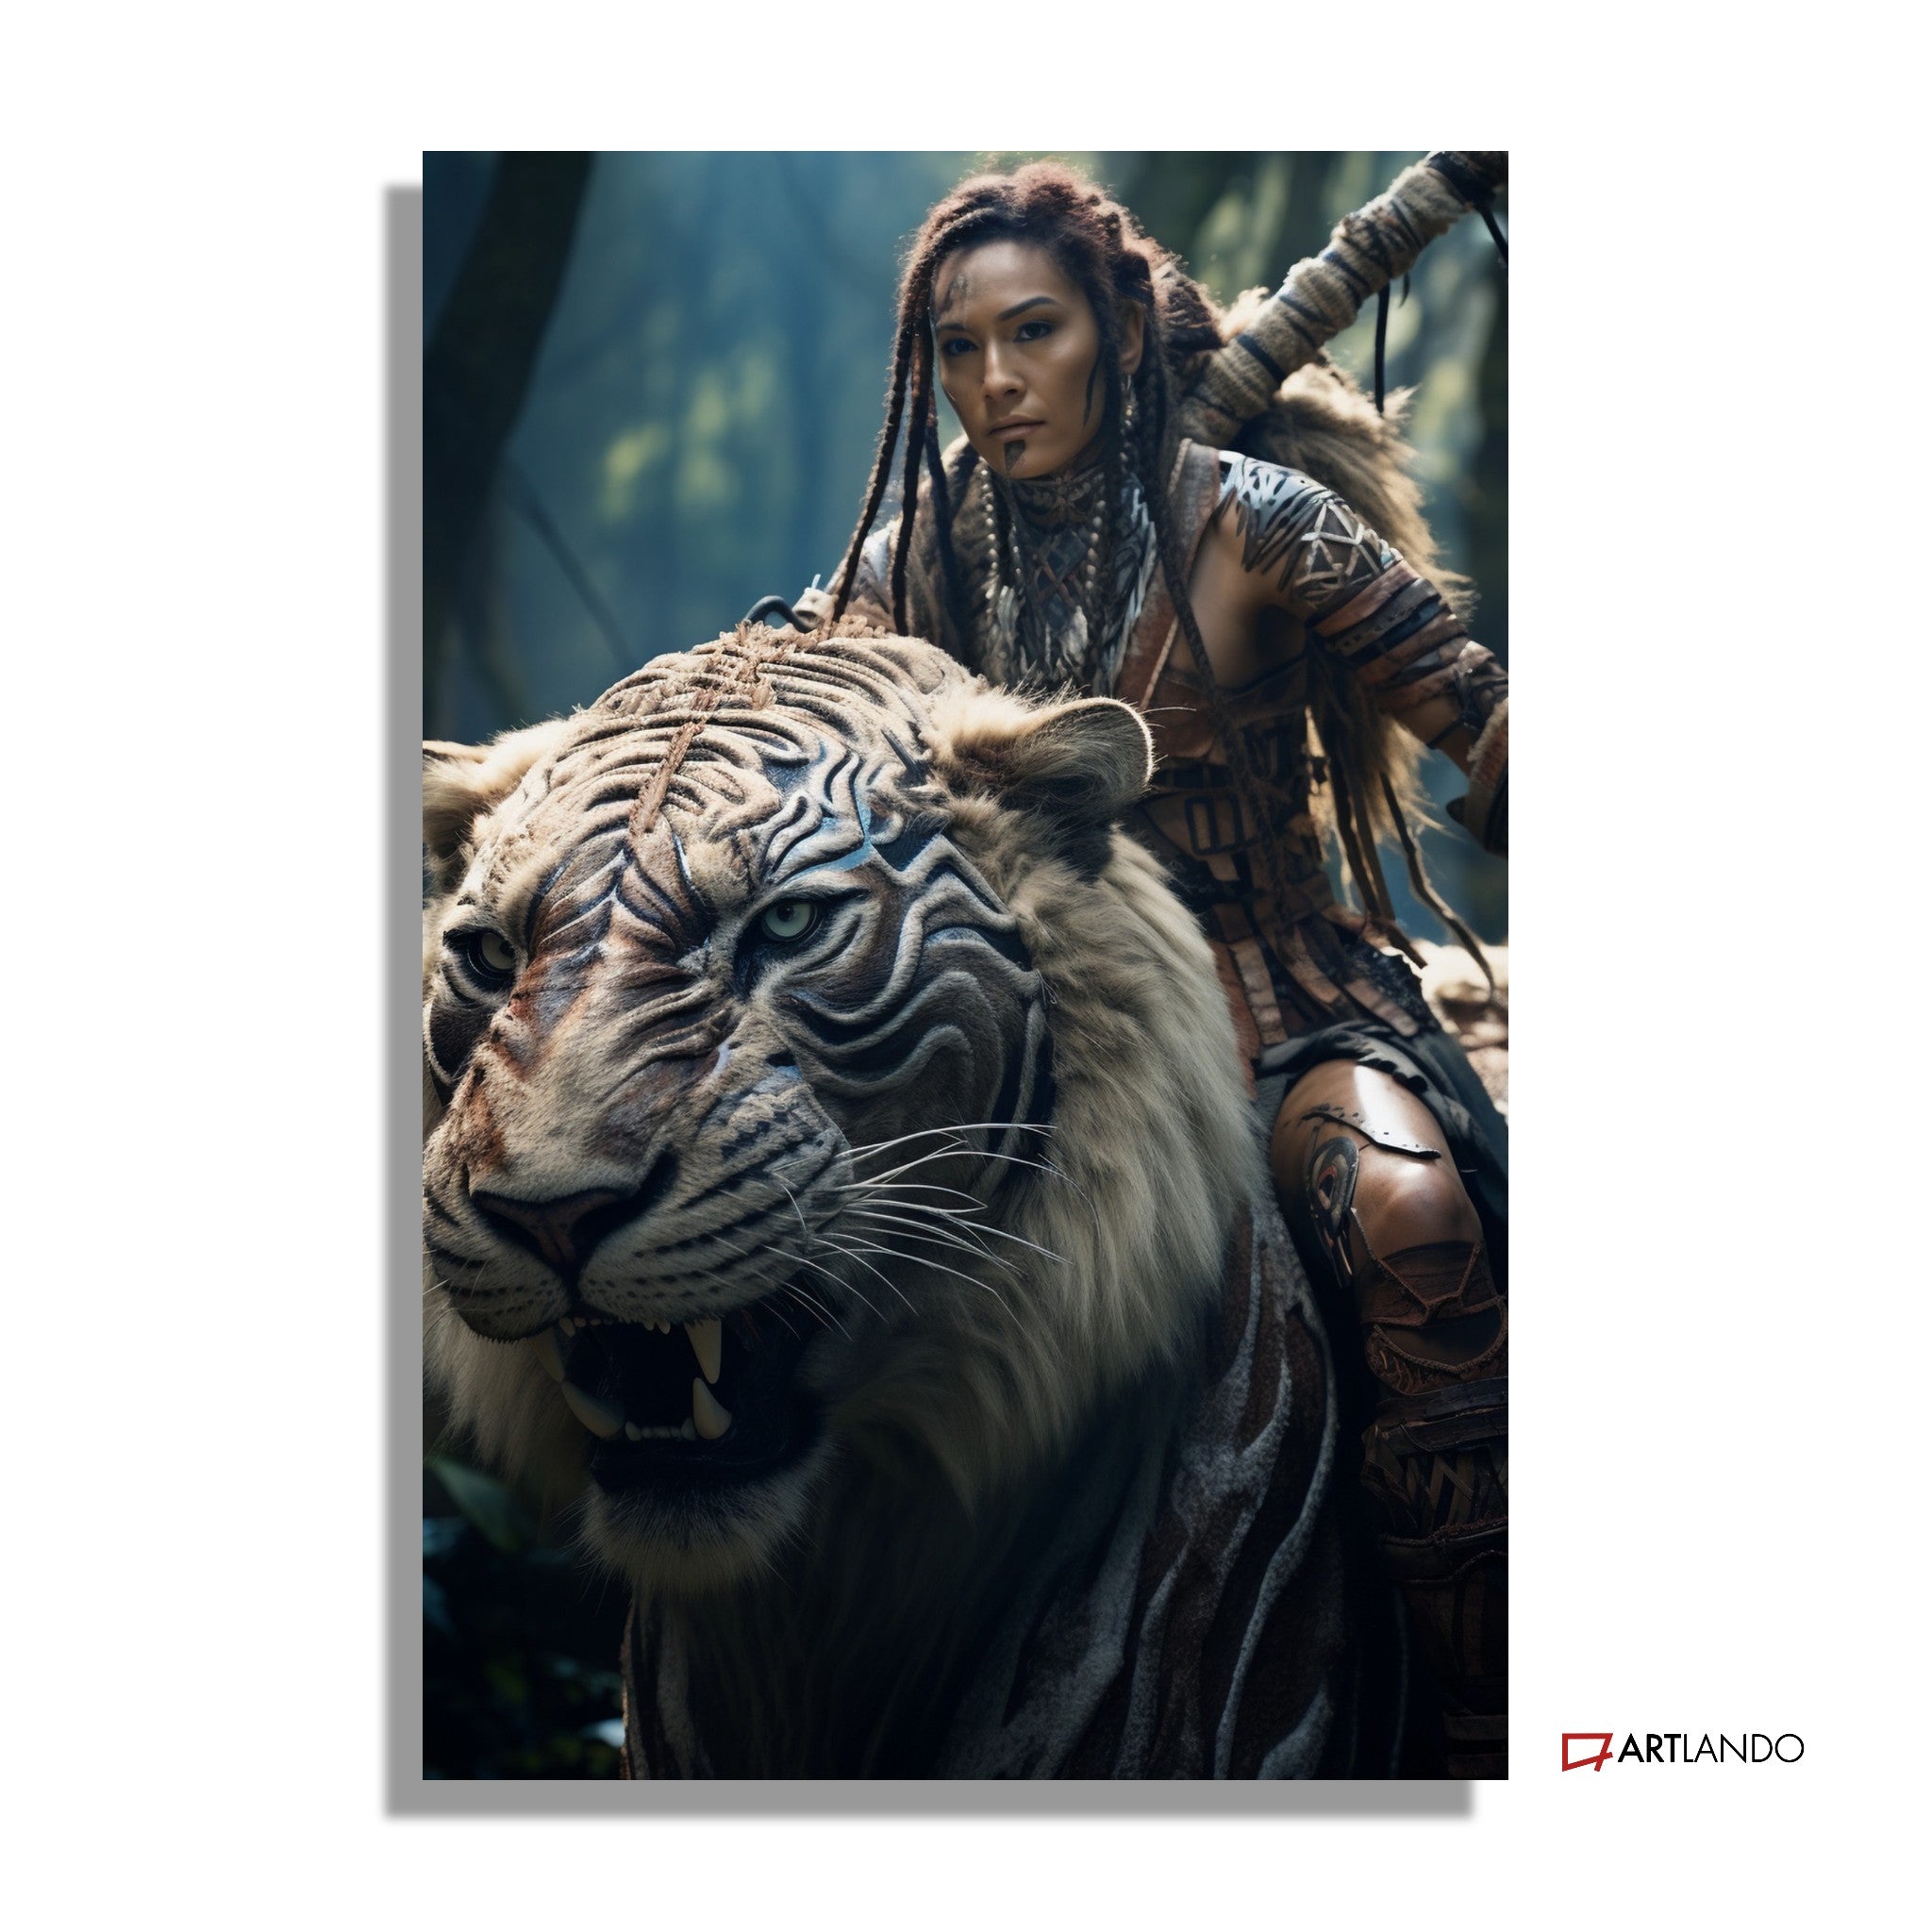 Mutige Kriegerin reitet auf Tiger